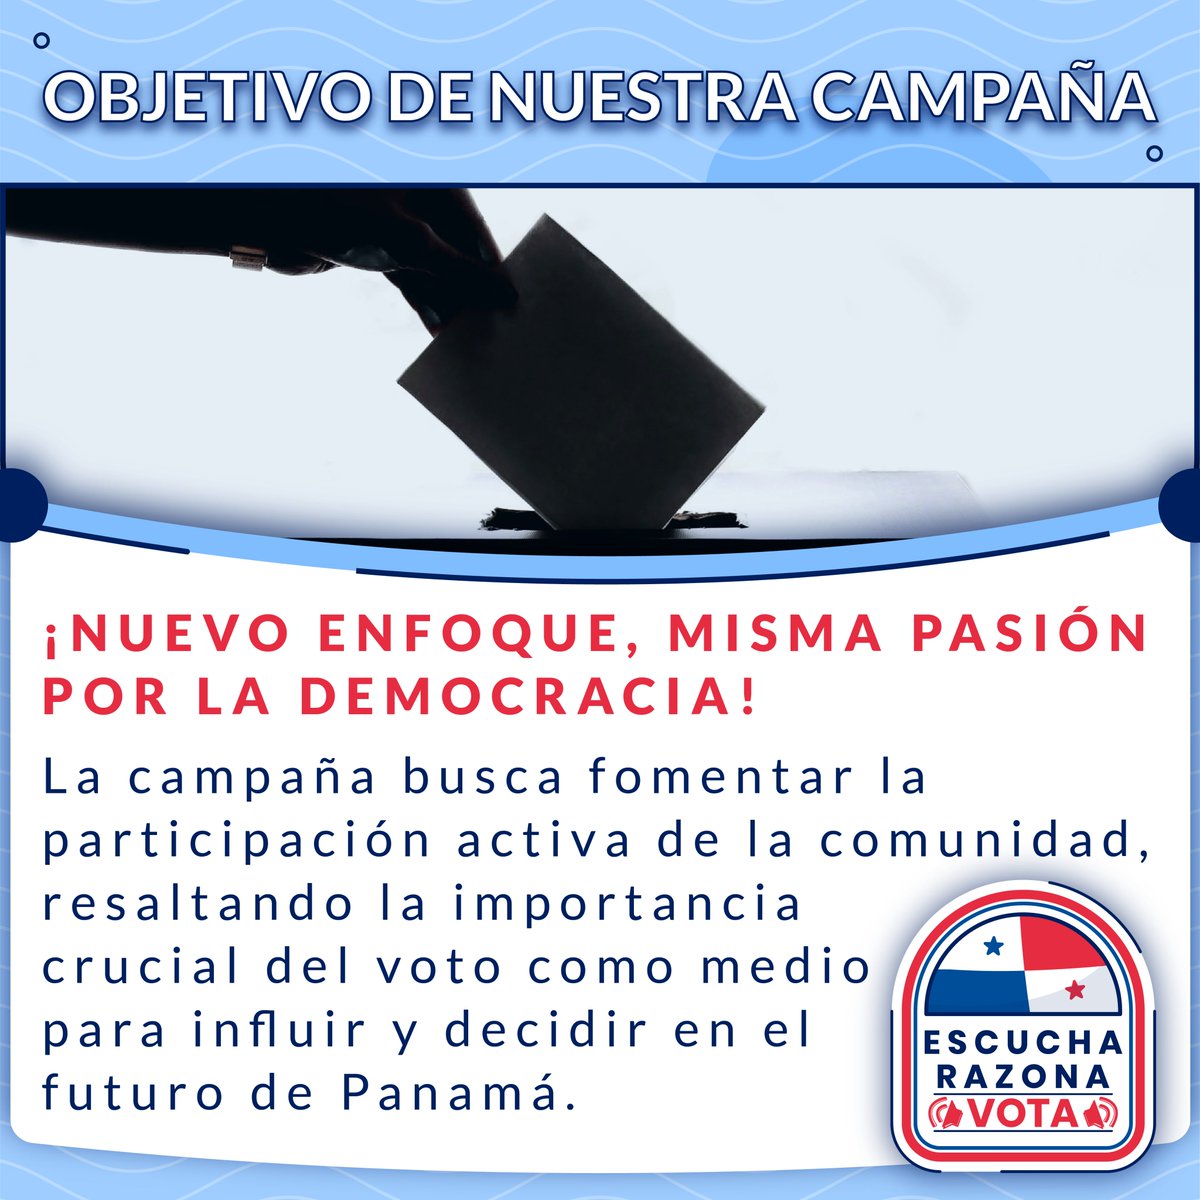 Nos inspira la importancia de tu participación activa, y queremos destacar el poder que tienes en tus manos: ¡tu voto! 🇵🇦✅ Escuchar, reflexionar y votar son pasos clave para moldear el futuro de nuestro país. #EscuchaRazonaVota #UnPanamáQueDebate #UnPanamáQueVota